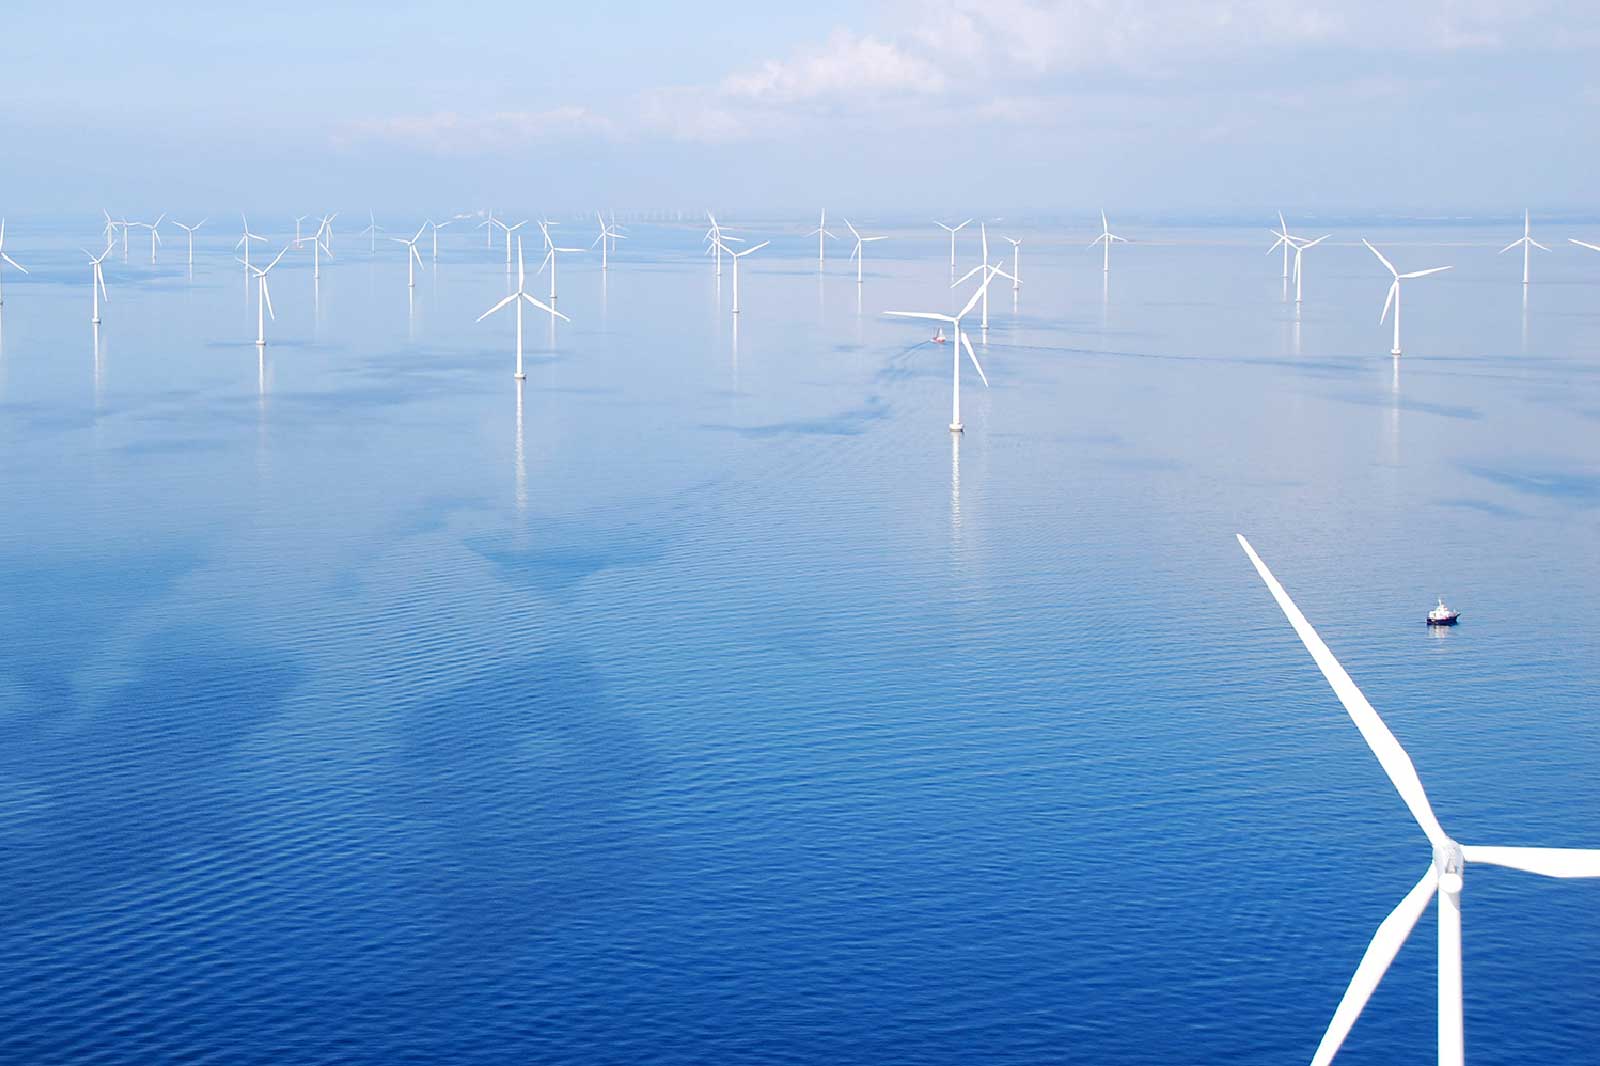 Rødsand 2, offshore wind park in Denmark | RWE in the Nordics